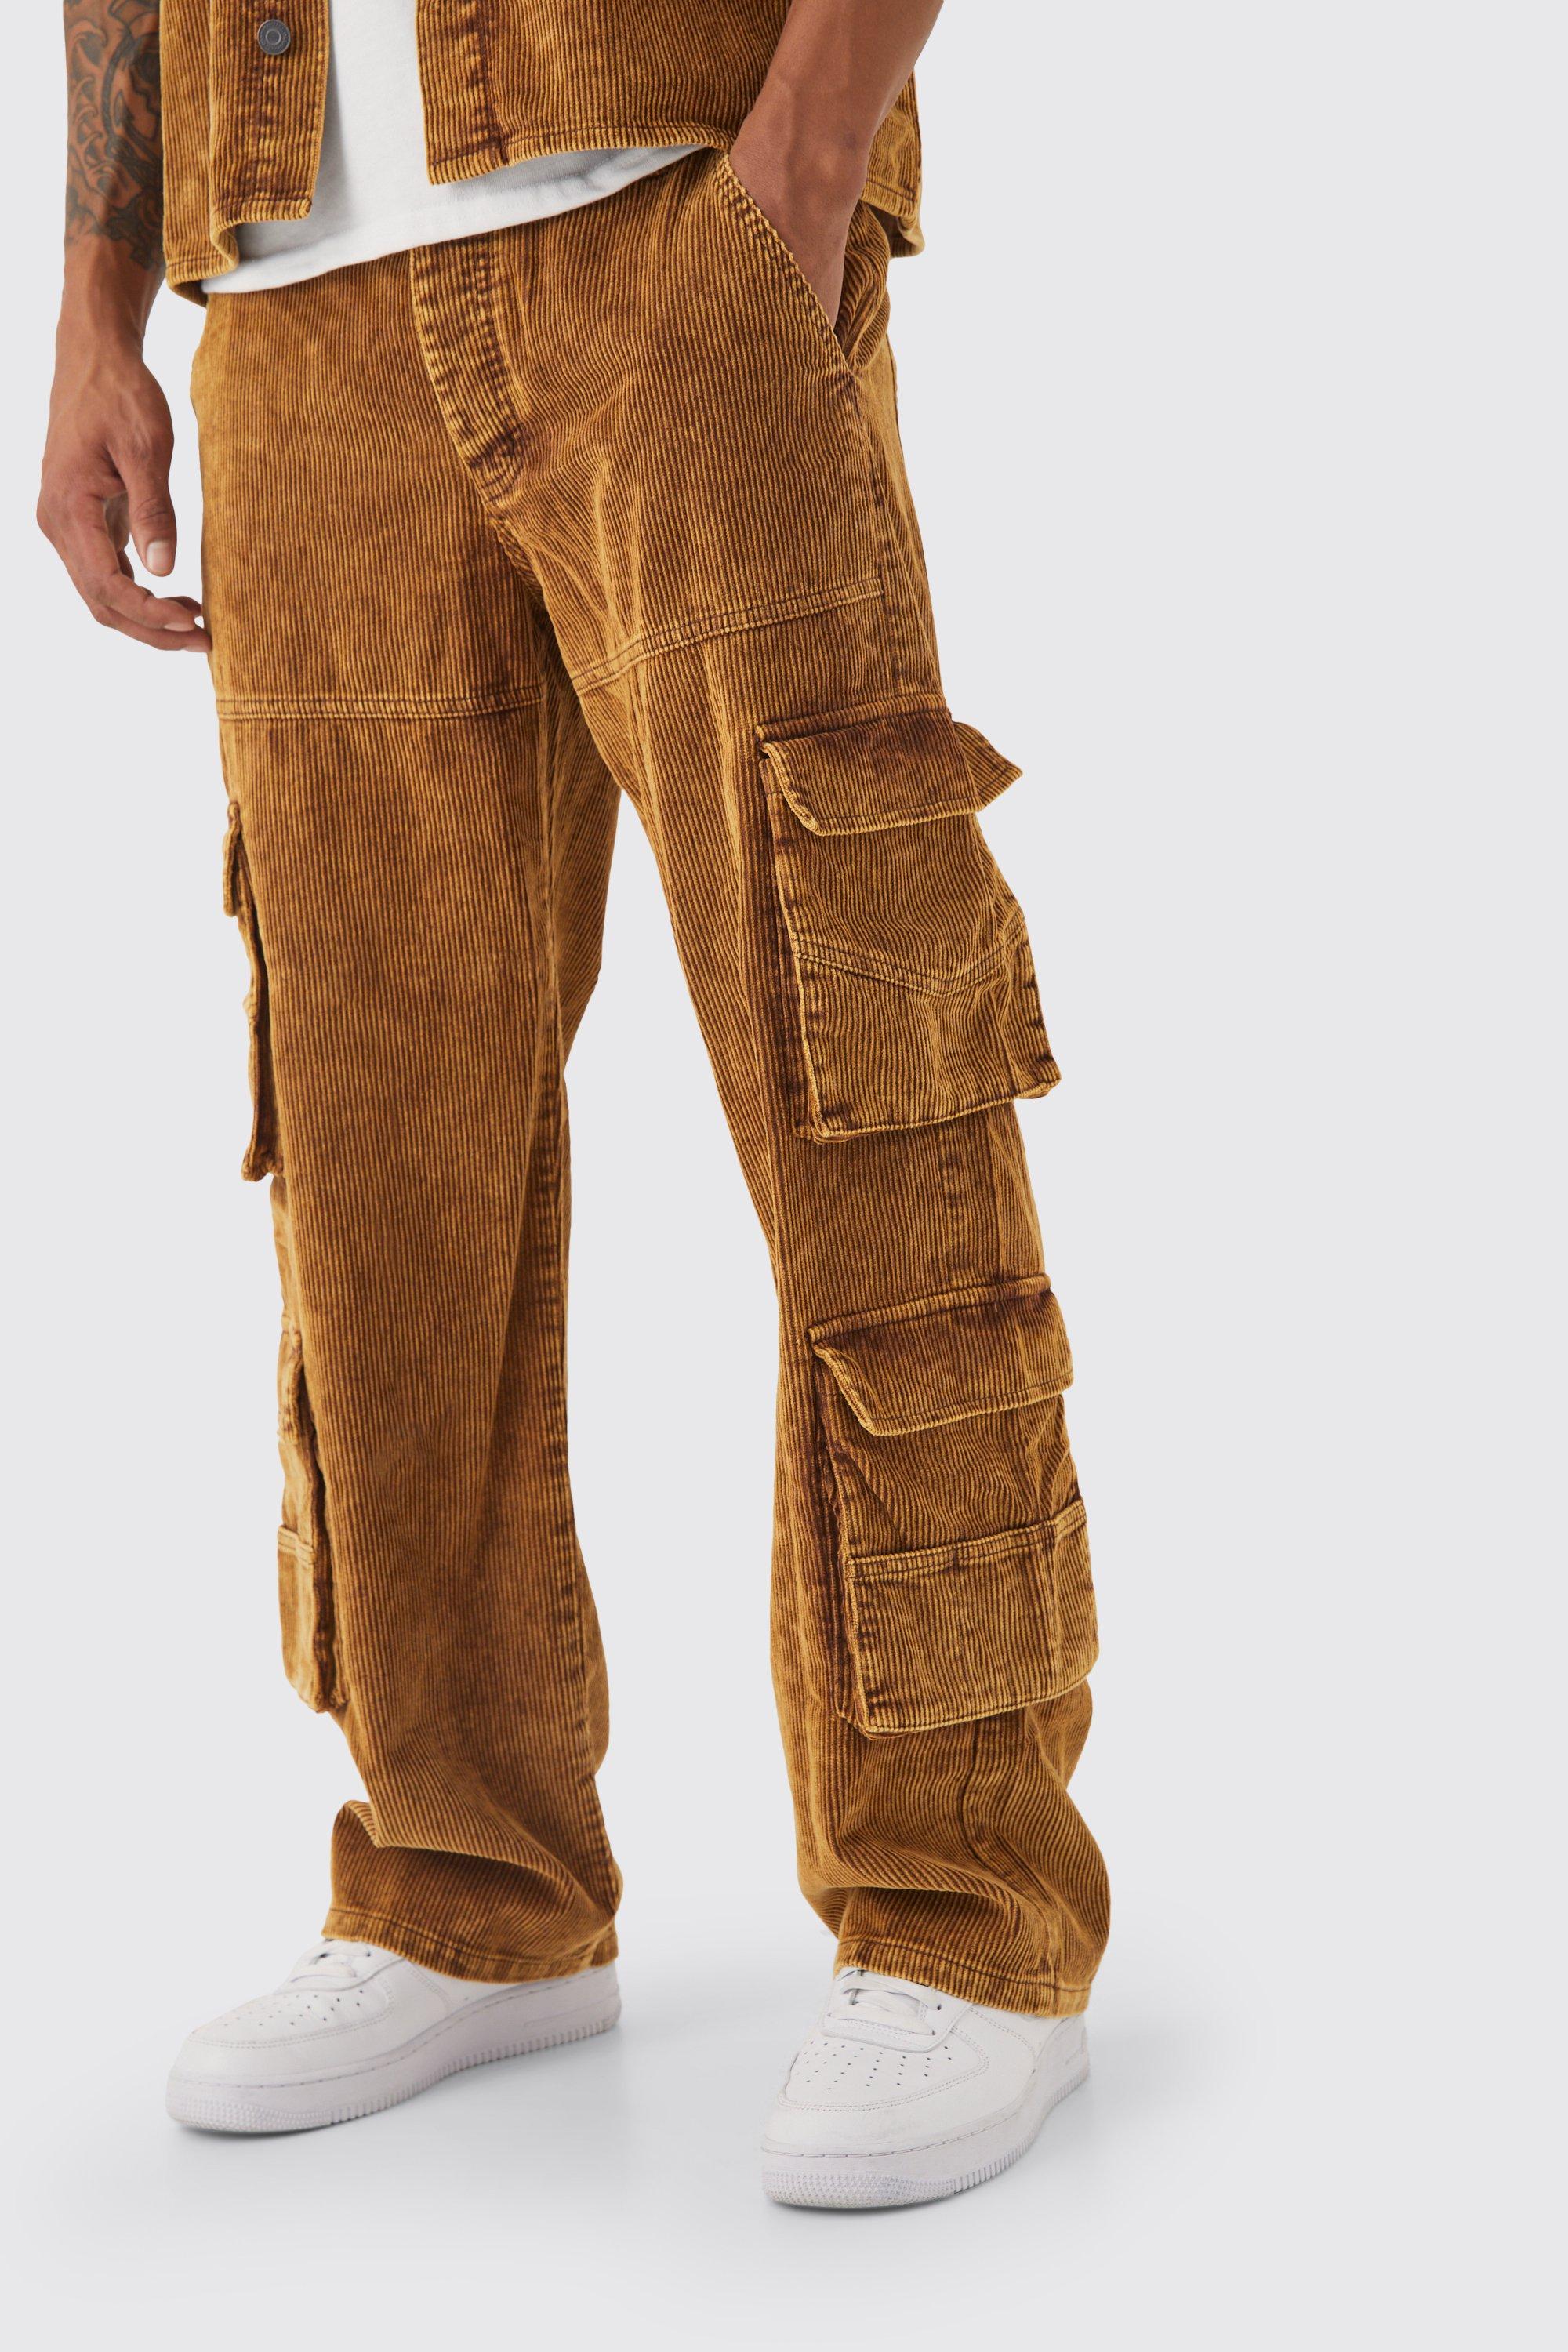 pantalon cargo baggy à poches multiples homme - brun - 34r, brun